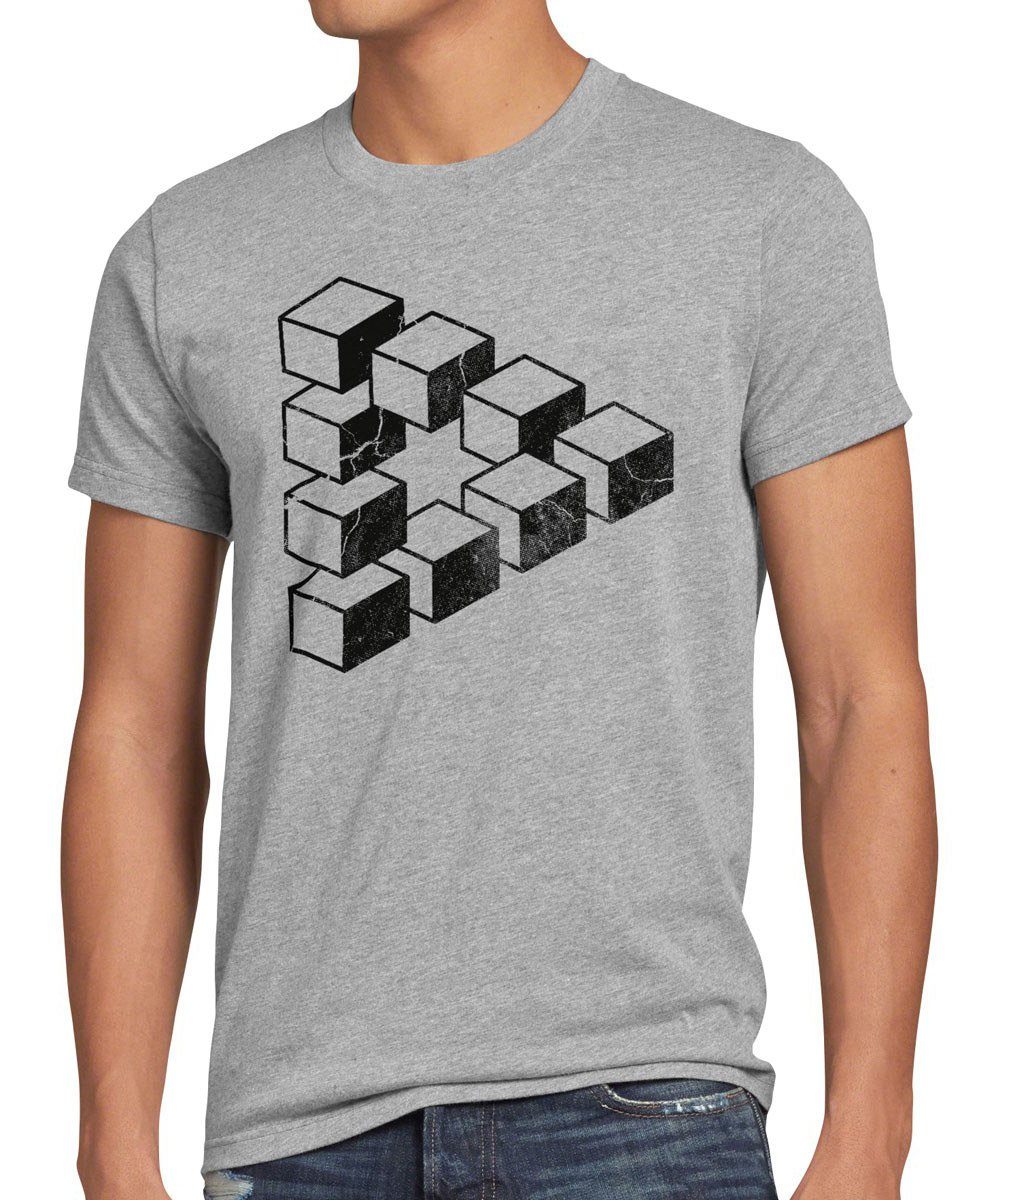 style3 Print-Shirt Herren Cube Cooper Sheldon Dreieck Penrose Escher würfel grau Theory Big bang meliert T-Shirt